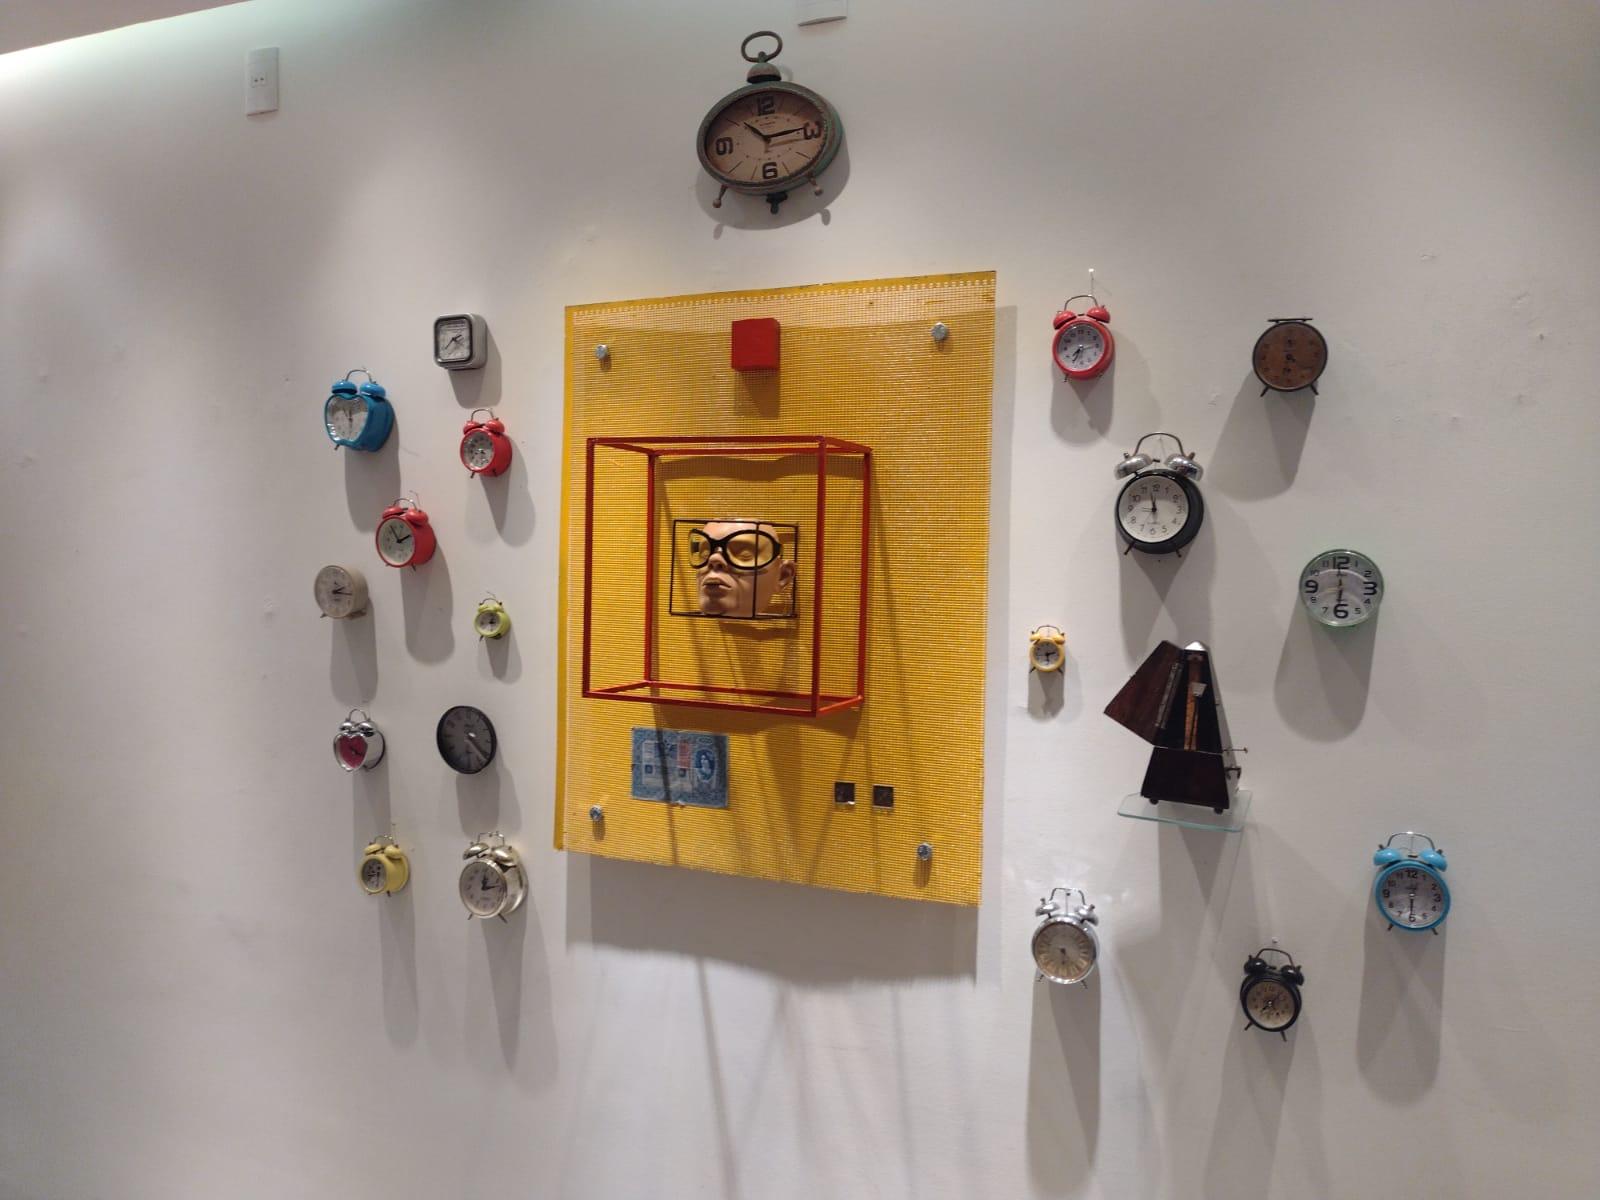 O artista conceitual Otamy abre a exposição “Portas e Portais, Espaço – Tempo – Infinito”, trazendo o objeto porta como metáfora e provocação, no Centro Cultural Correios RJ